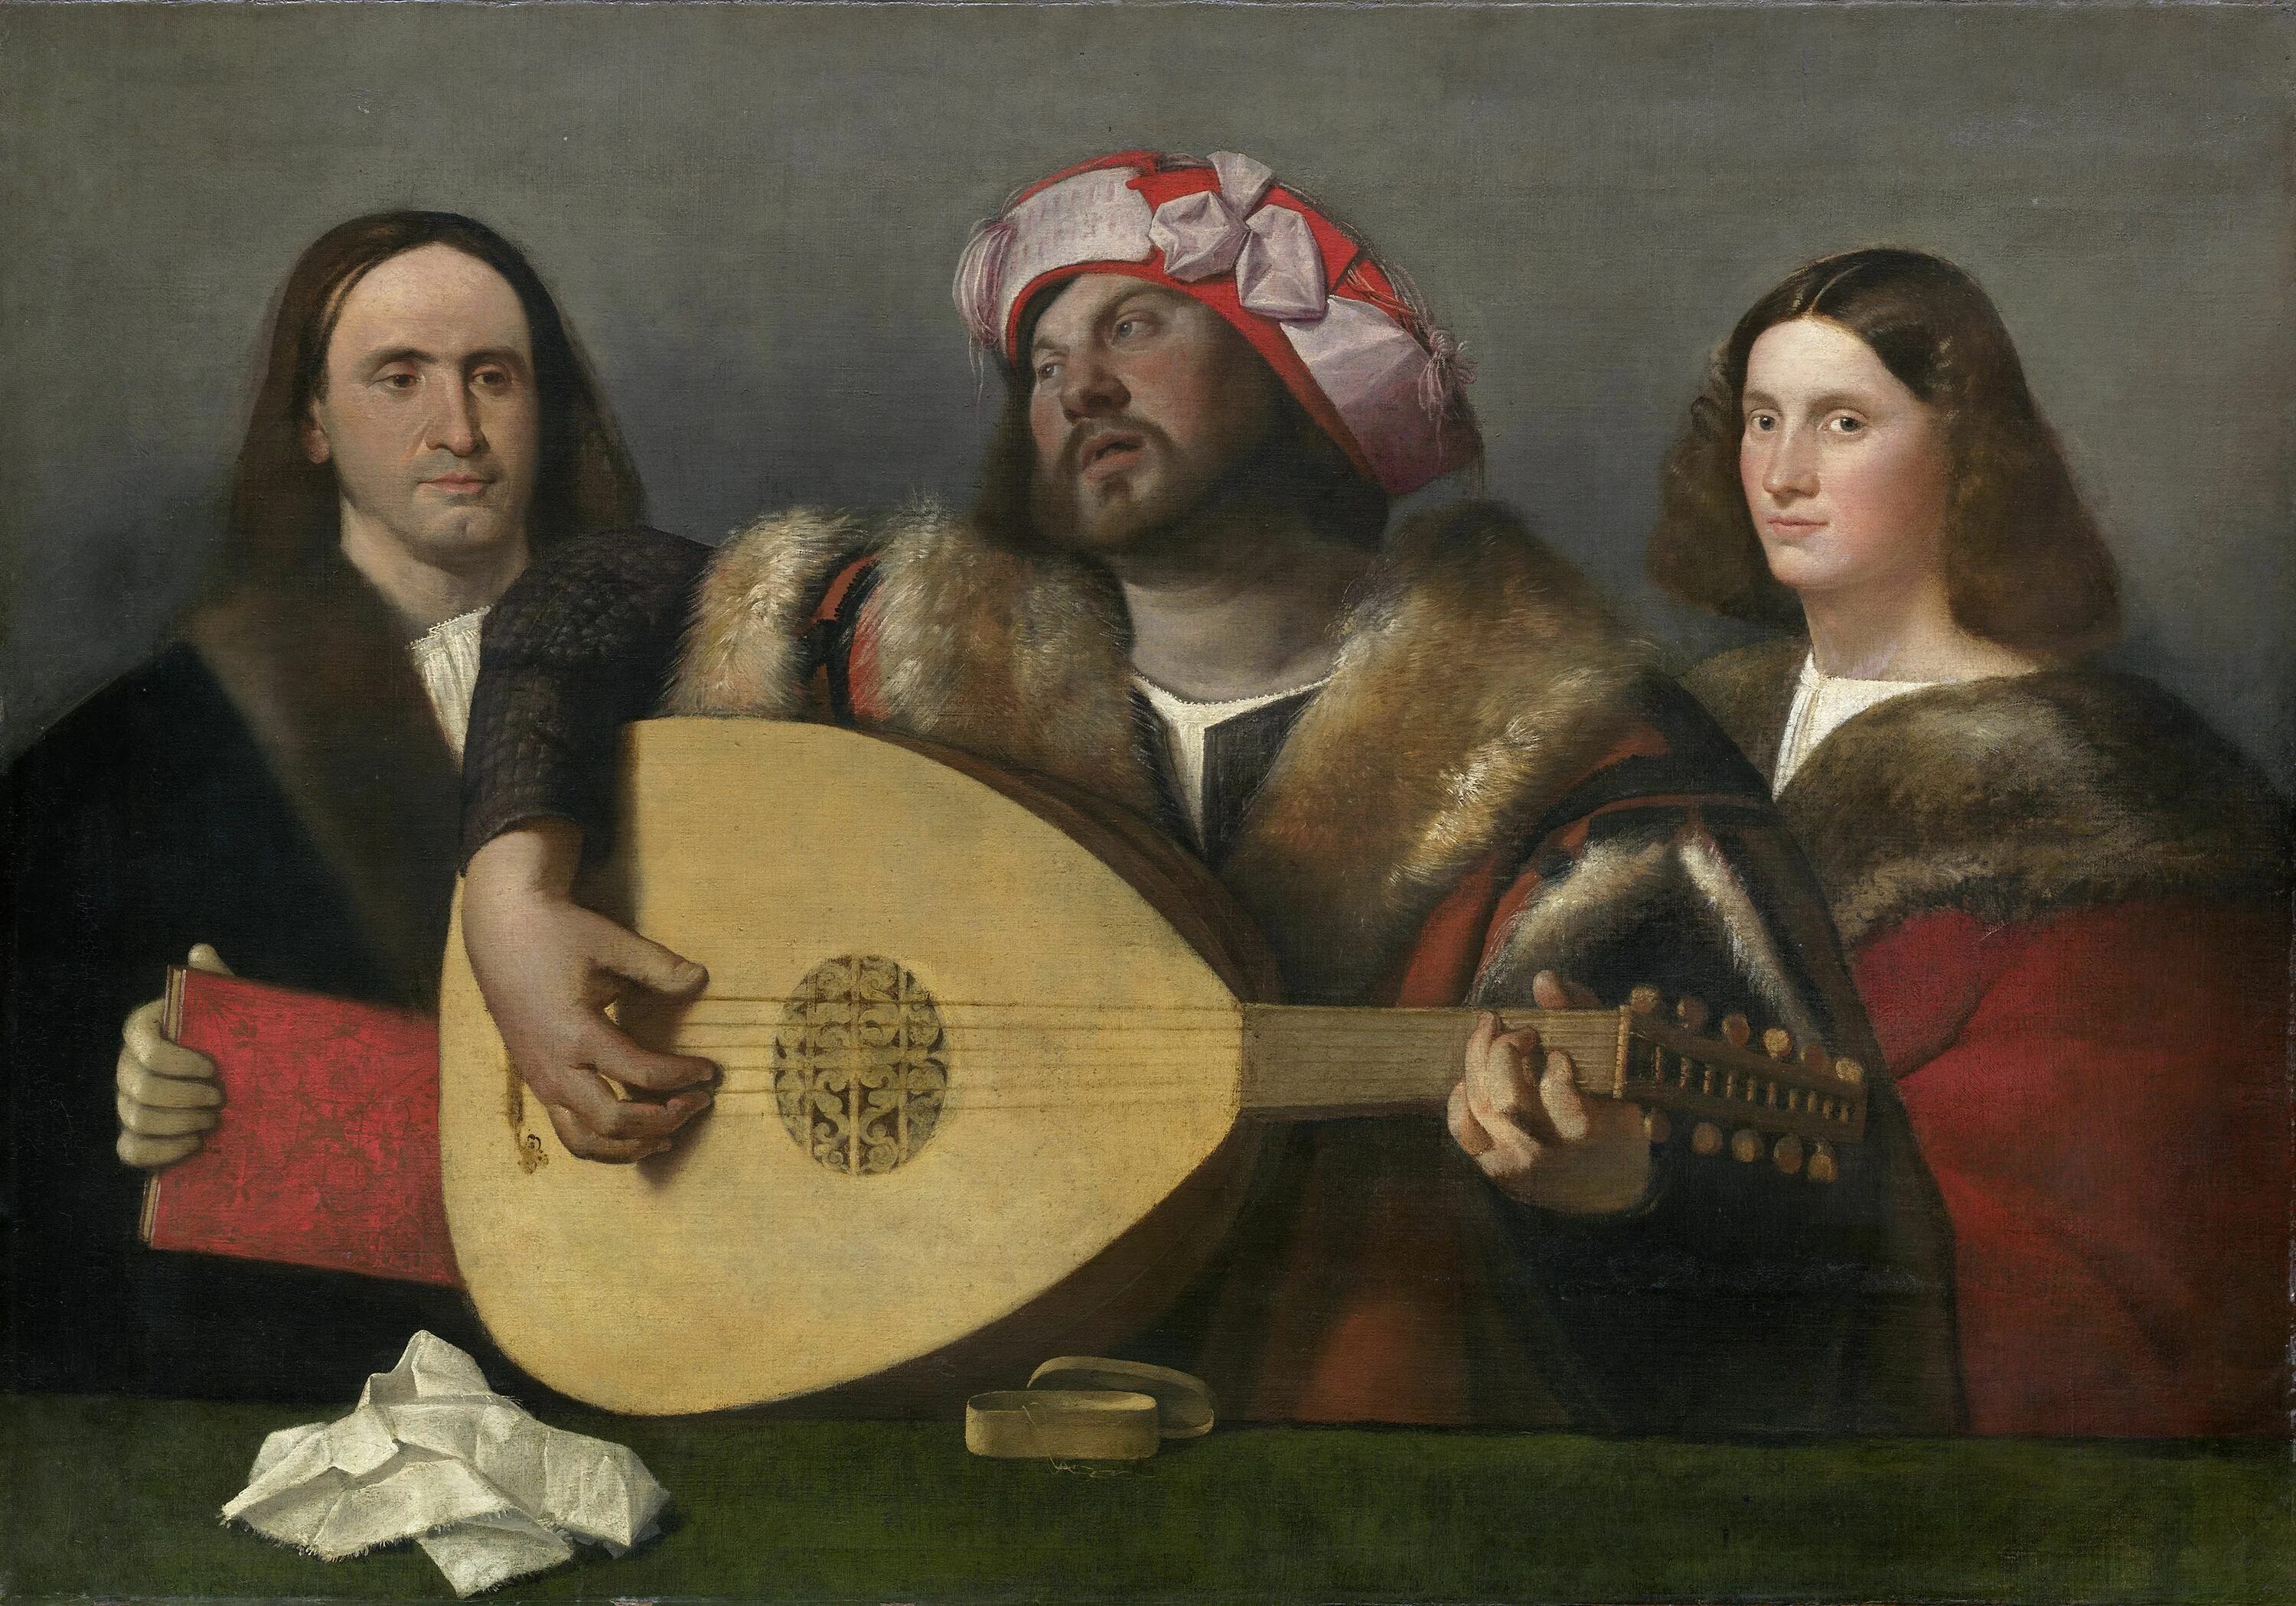 Джованни Кариани (1485 - 1547). Cariani Giovanni картины. Ренессанс эпоха Возрождения. Джованни Кариани картины лютнист.